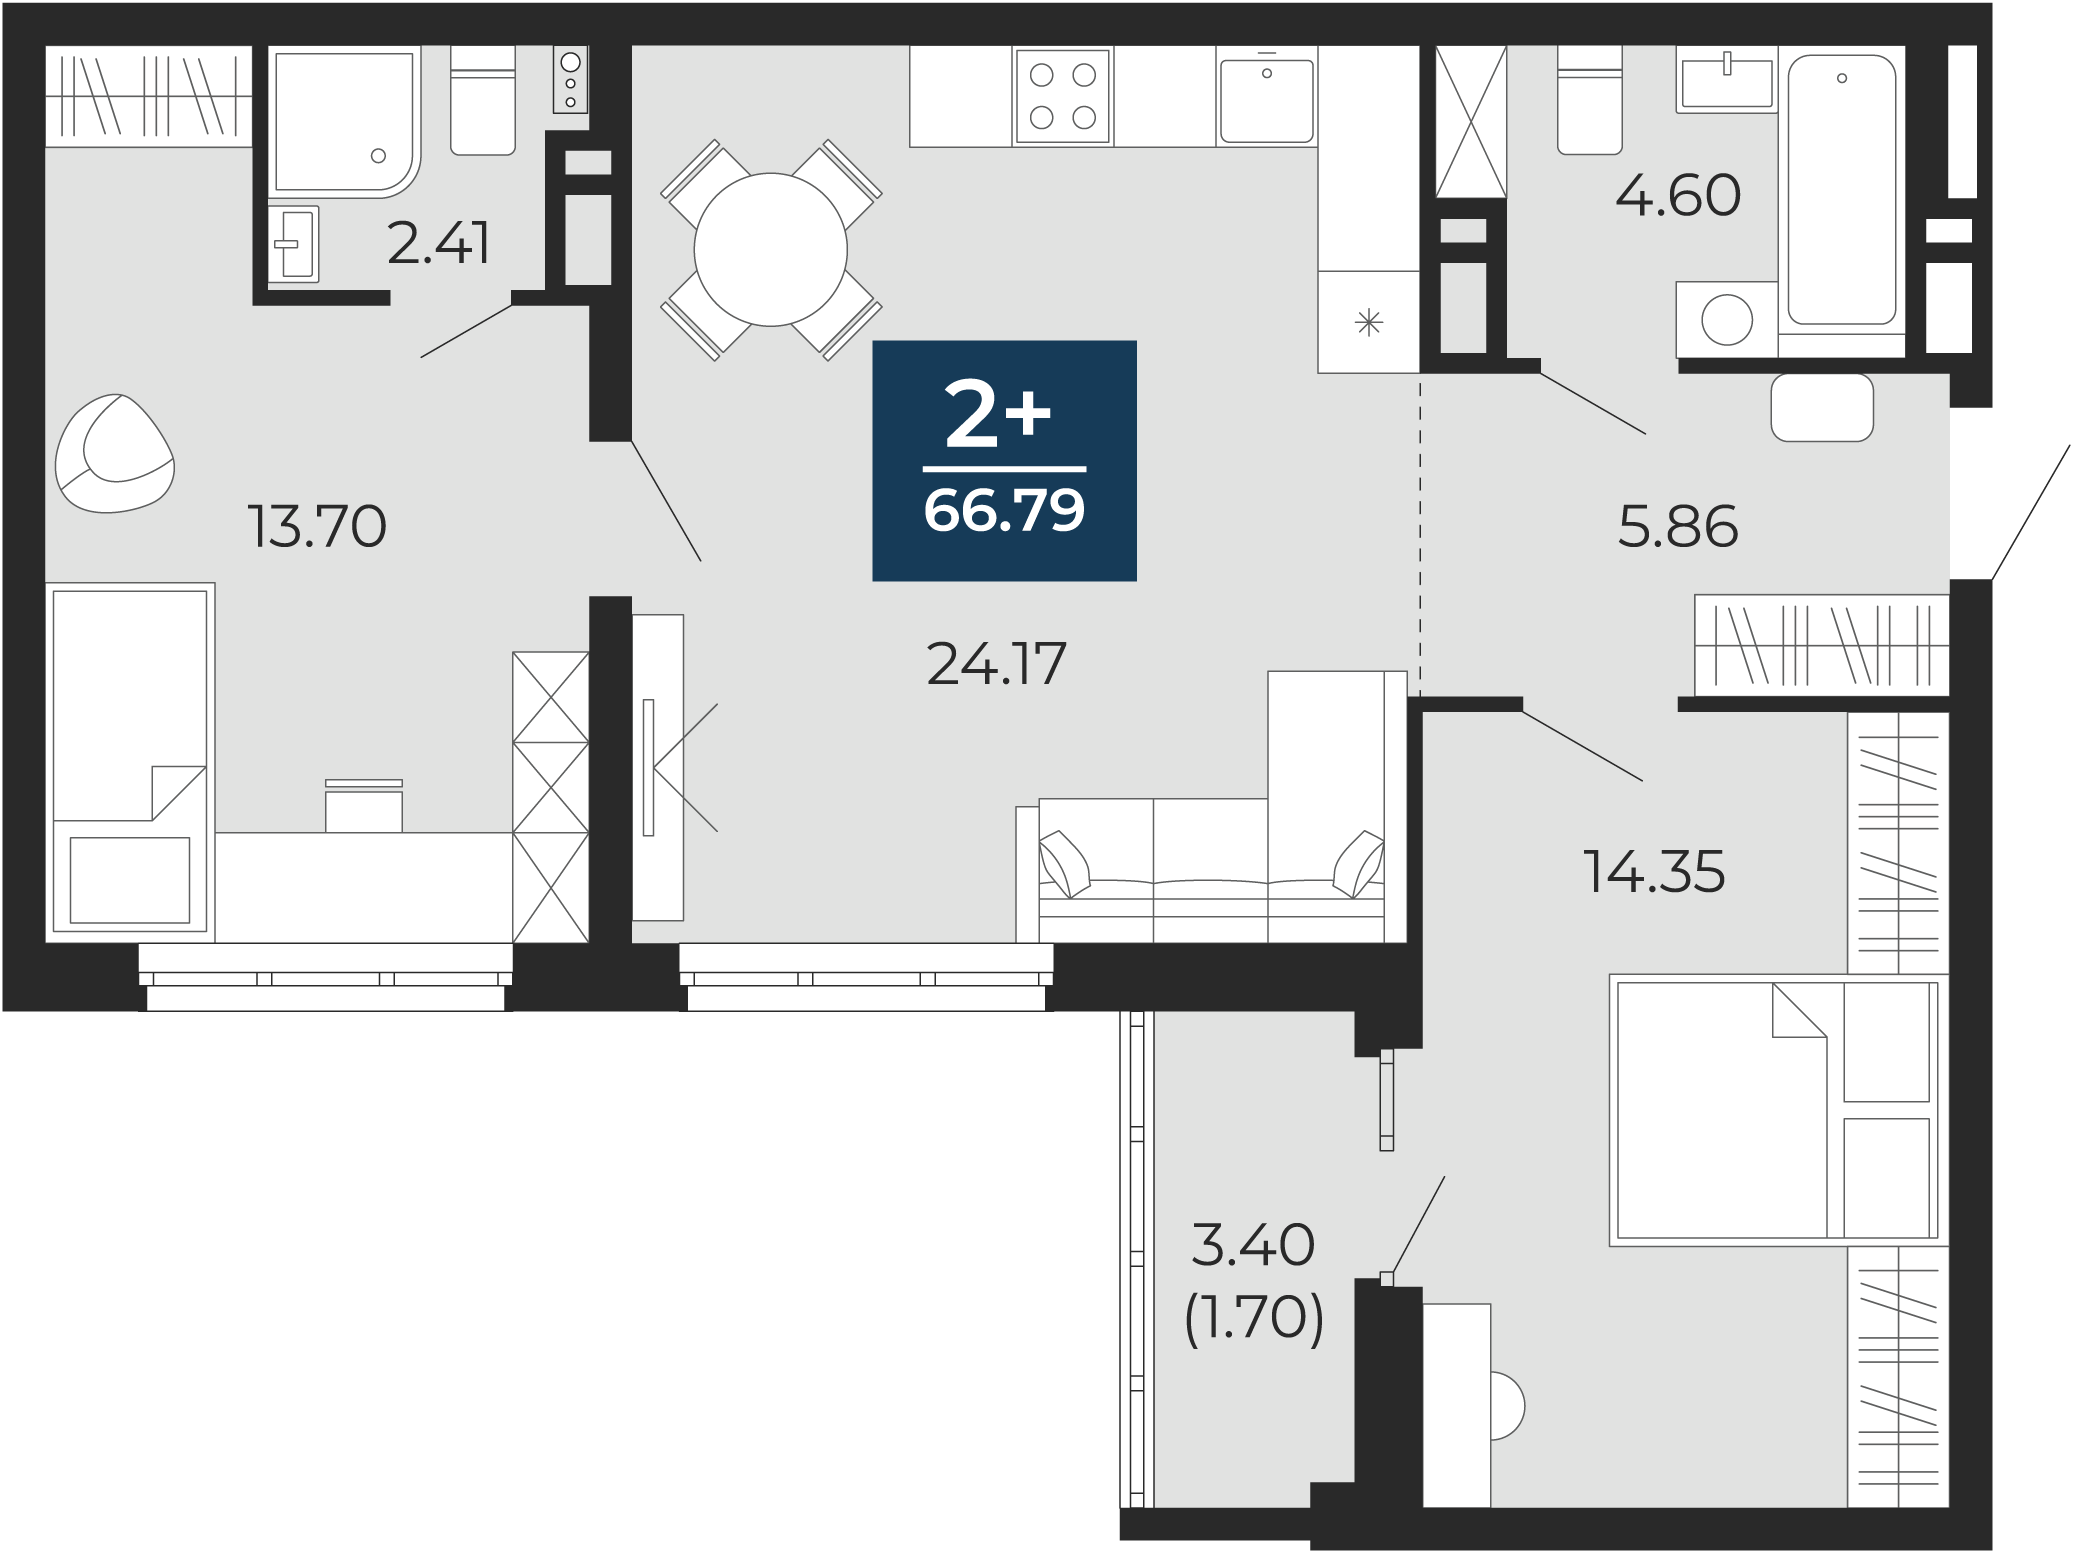 Квартира № 221, 2-комнатная, 66.79 кв. м, 3 этаж